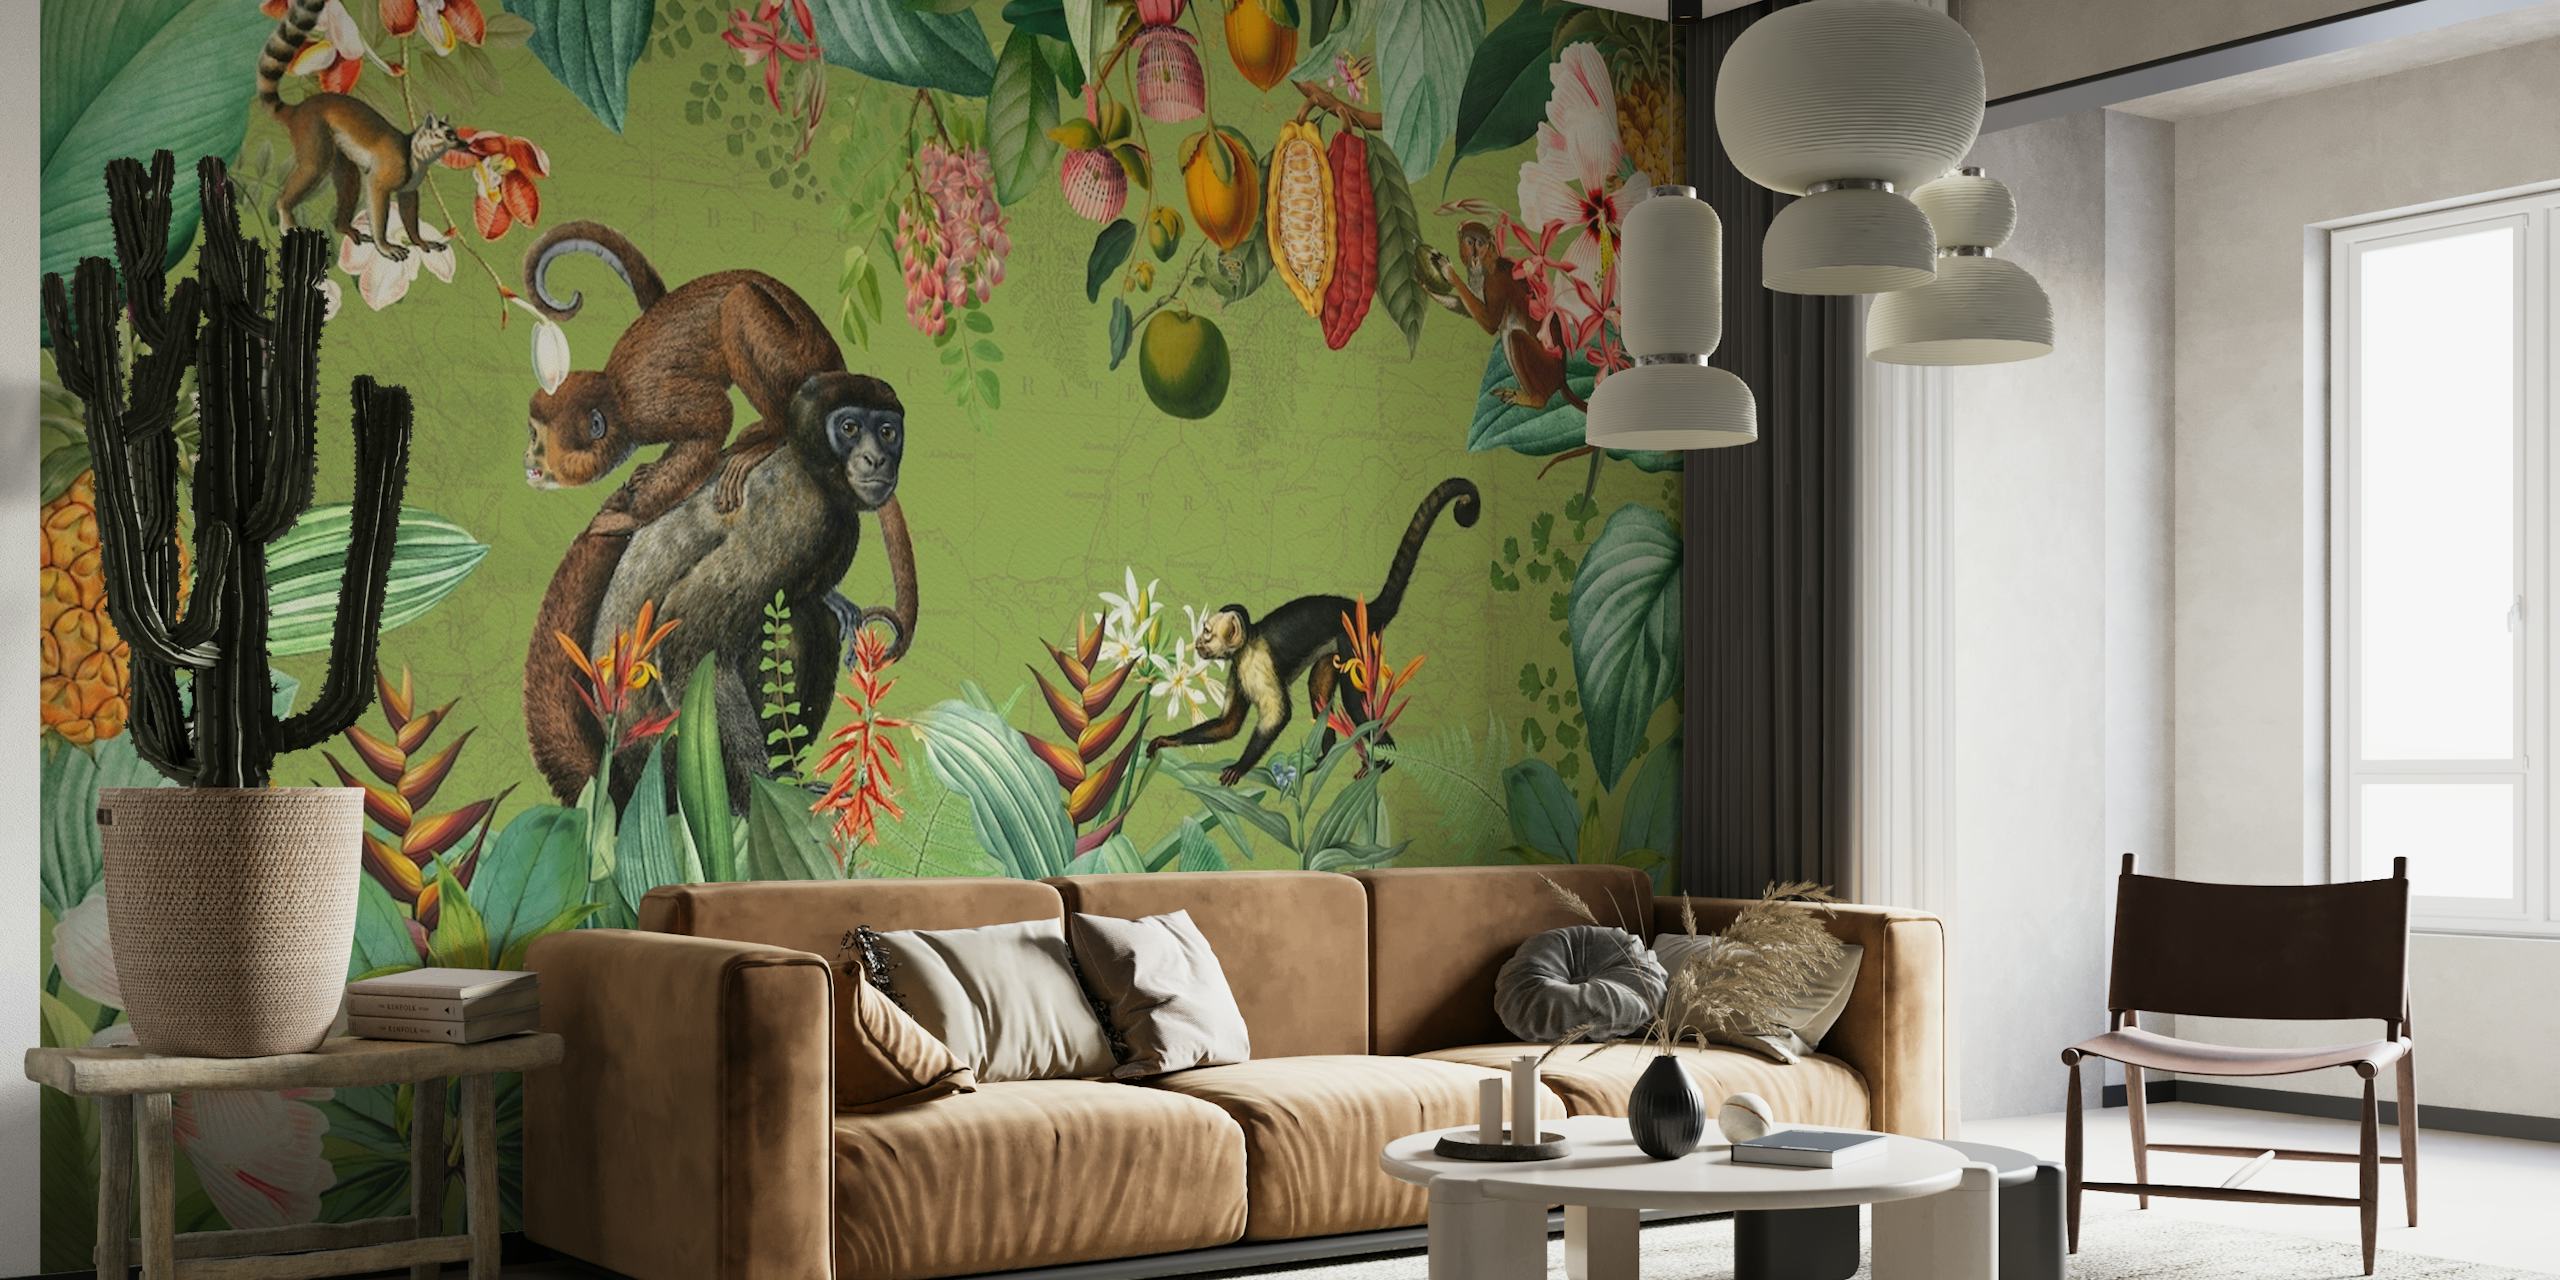 Fototapeta w stylu vintage przedstawiająca małpy i rośliny tropikalne w scenerii afrykańskiej dżungli